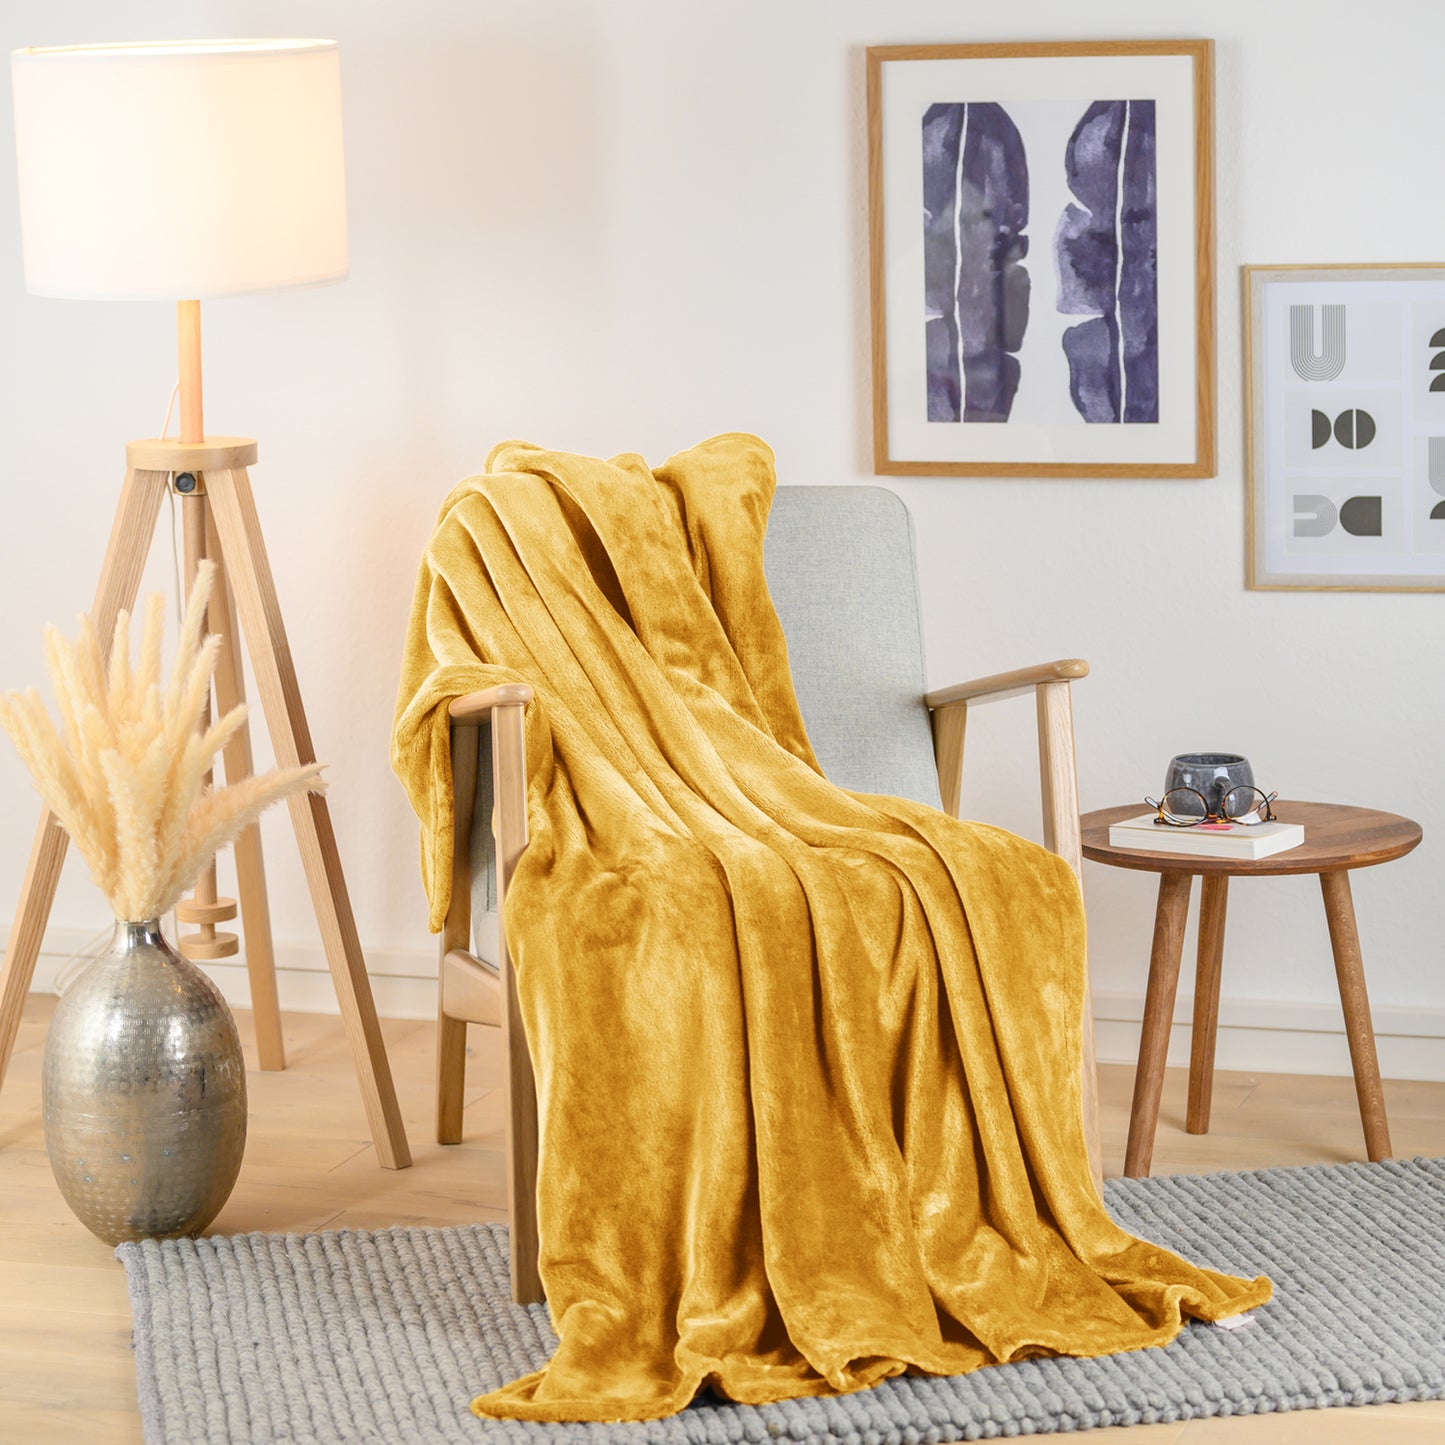 Senfgelbe Fleece-Kuscheldecke elegant drapiert über einen Sessel in einem stilvollen Wohnraum, neben einer Stehlampe und Pflanzendekoration.